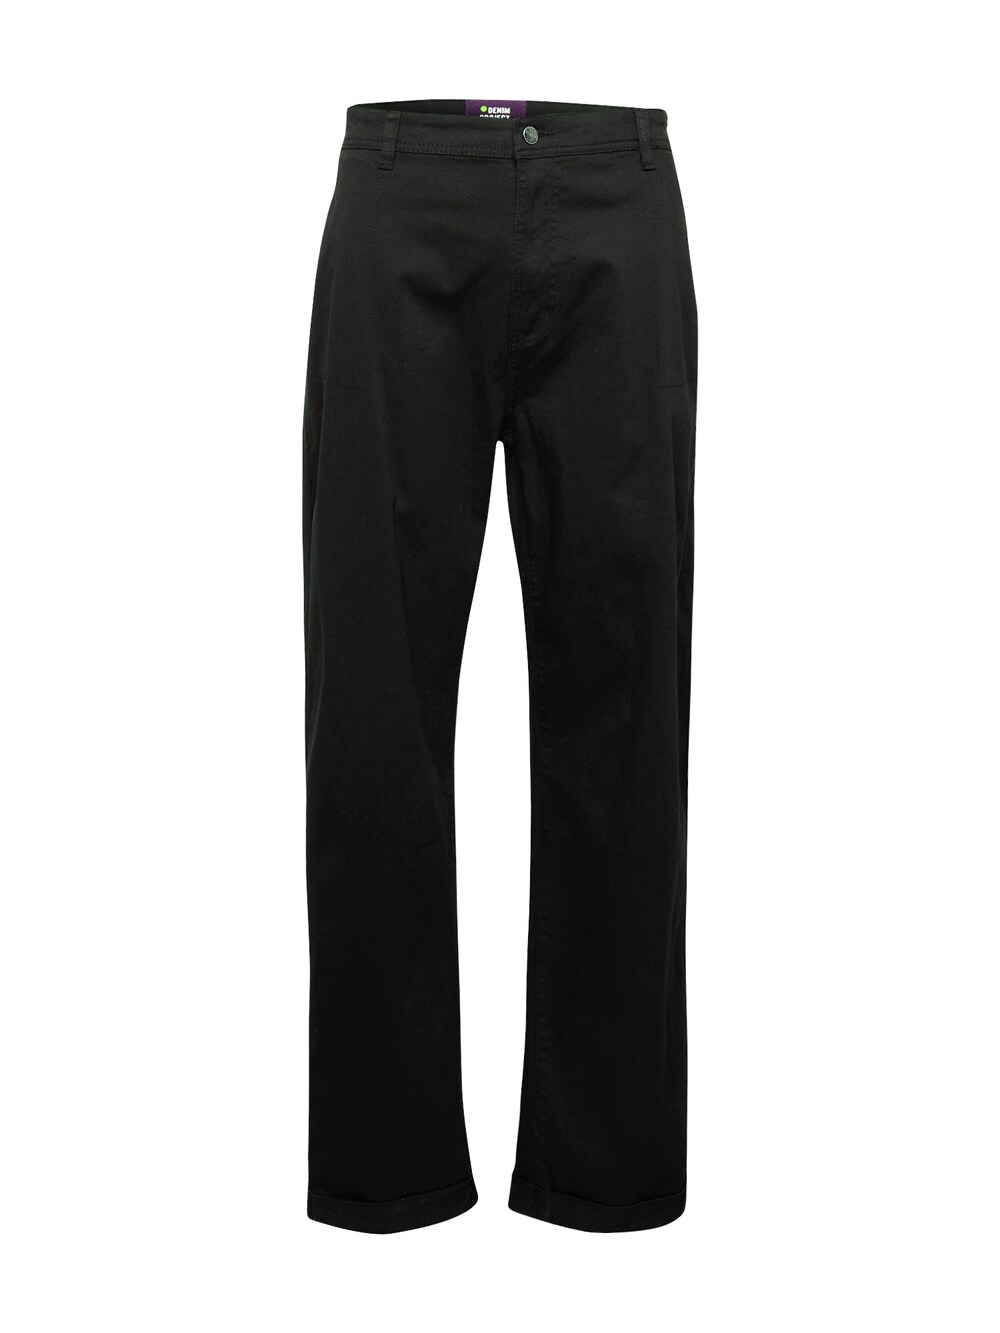 Обычные брюки чинос Denim Project, черный обычные брюки чинос 11 project черный